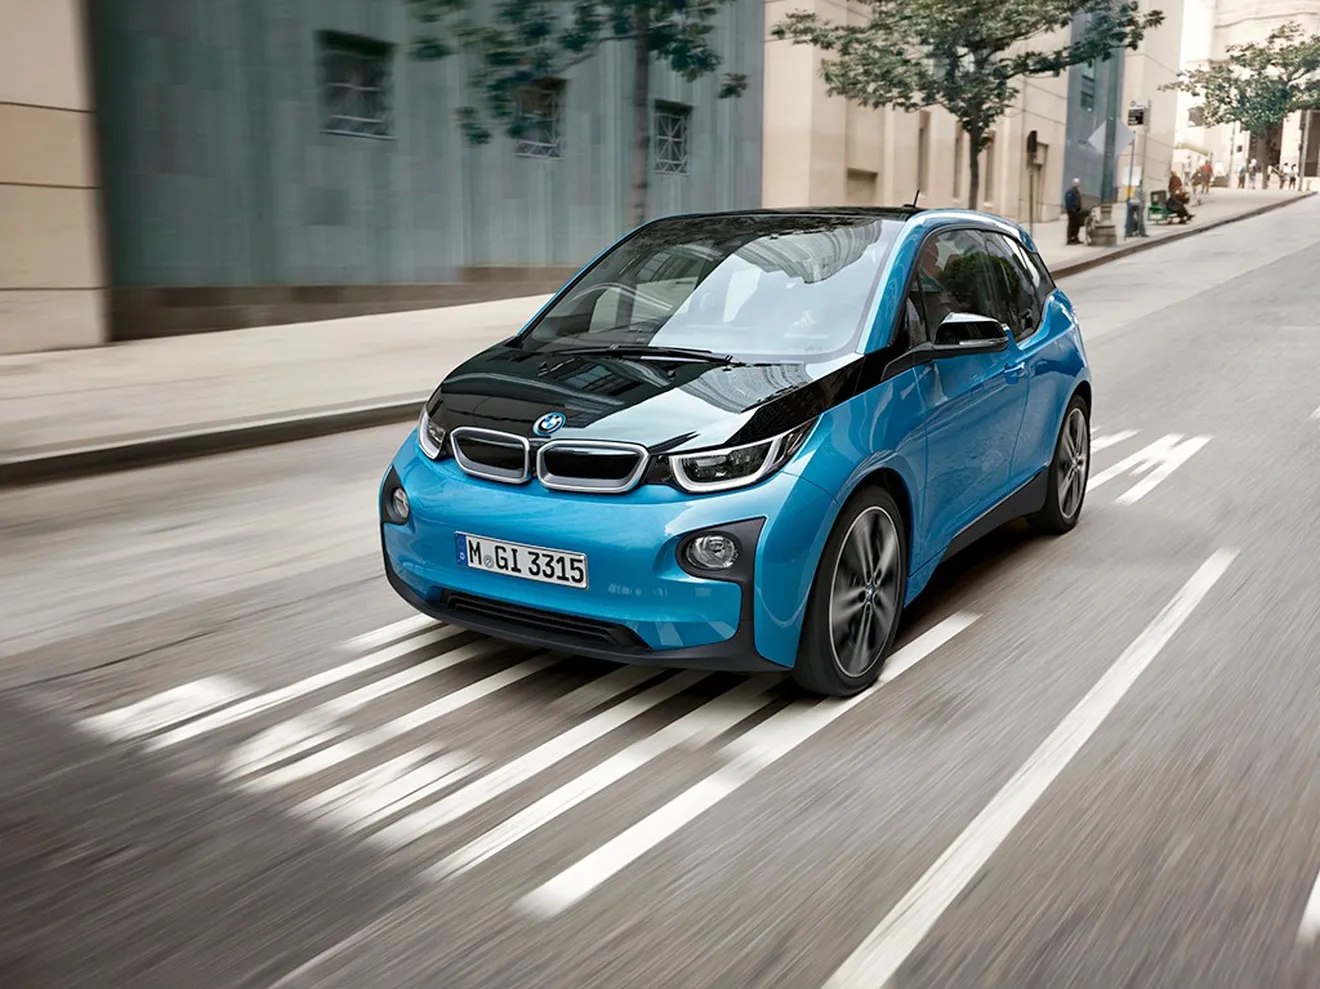 Precio del BMW i3 con batería de 33 kWh: llegan los 300 kilómetros de autonomía